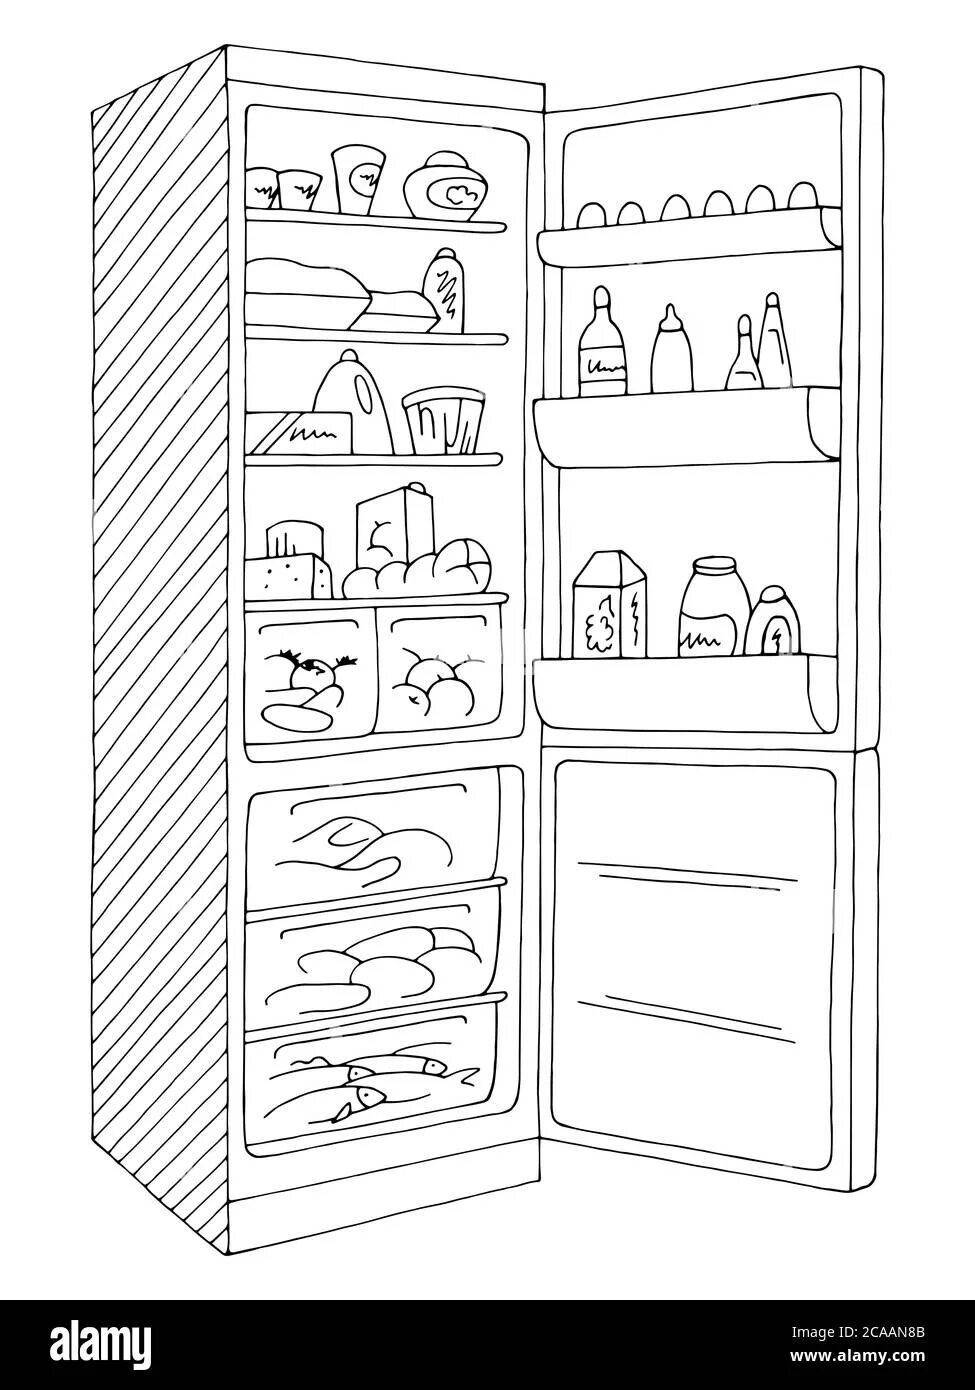 Радостная раскраска холодильника для детей